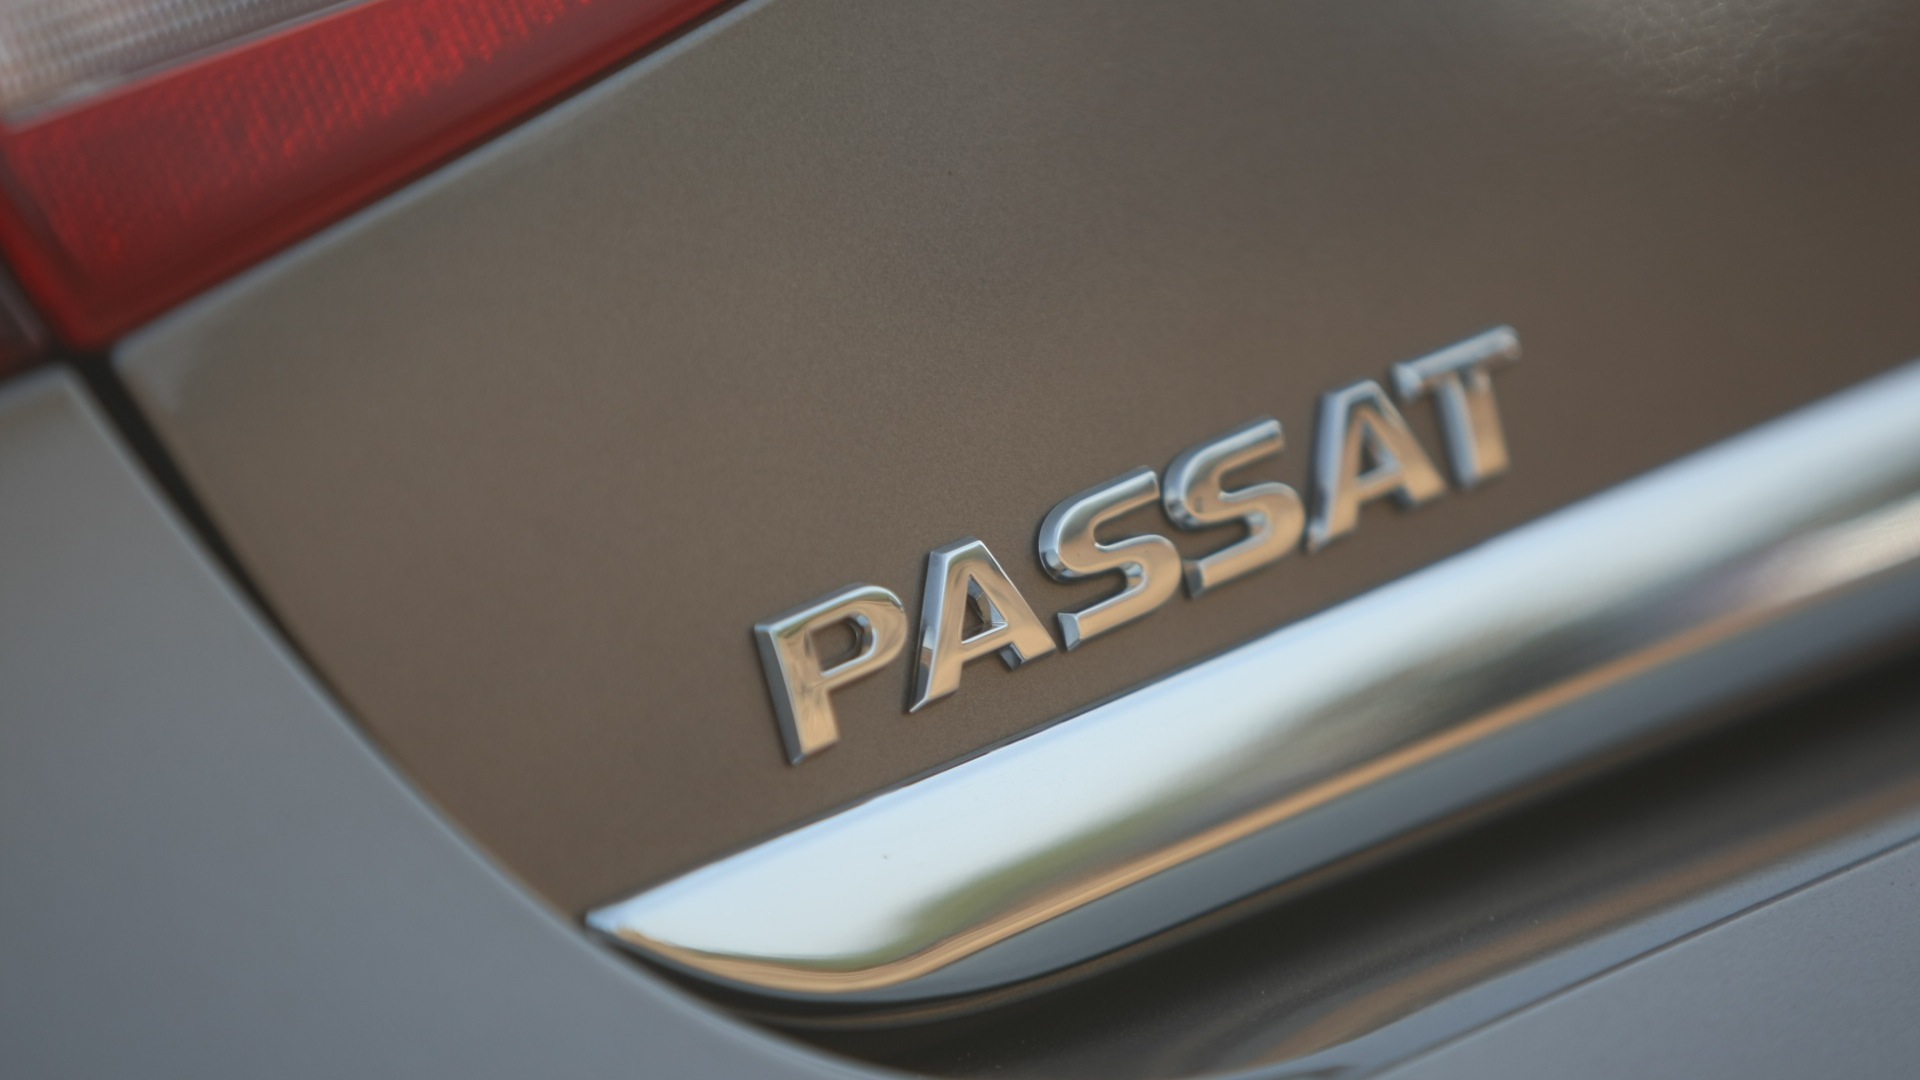 Volkswagen-Passat-2013-Trendline-MT-Exterior